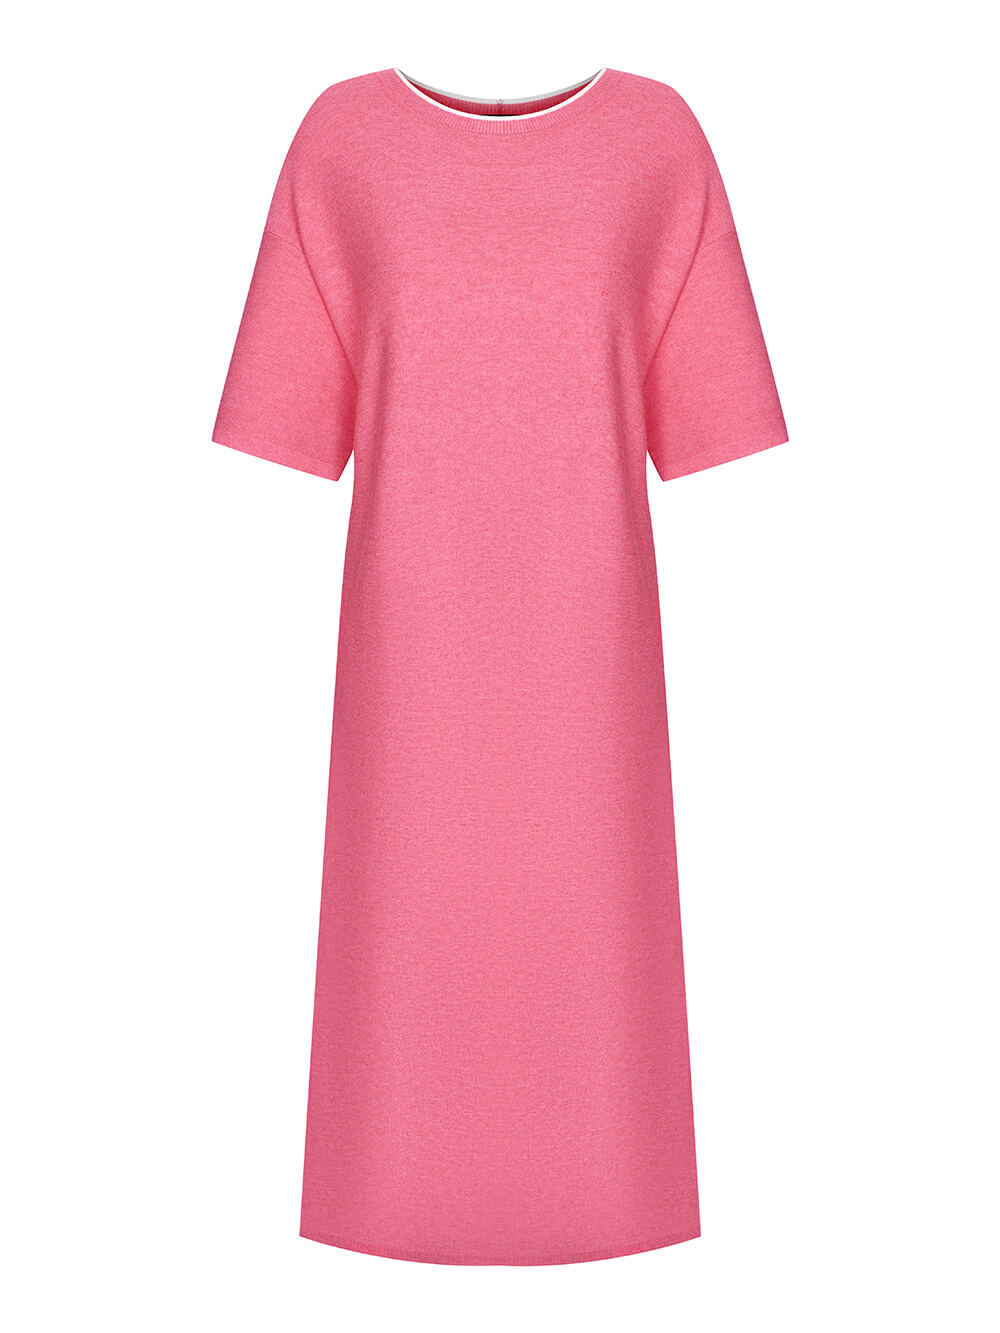 Женское платье розового цвета из вискозы - фото 1